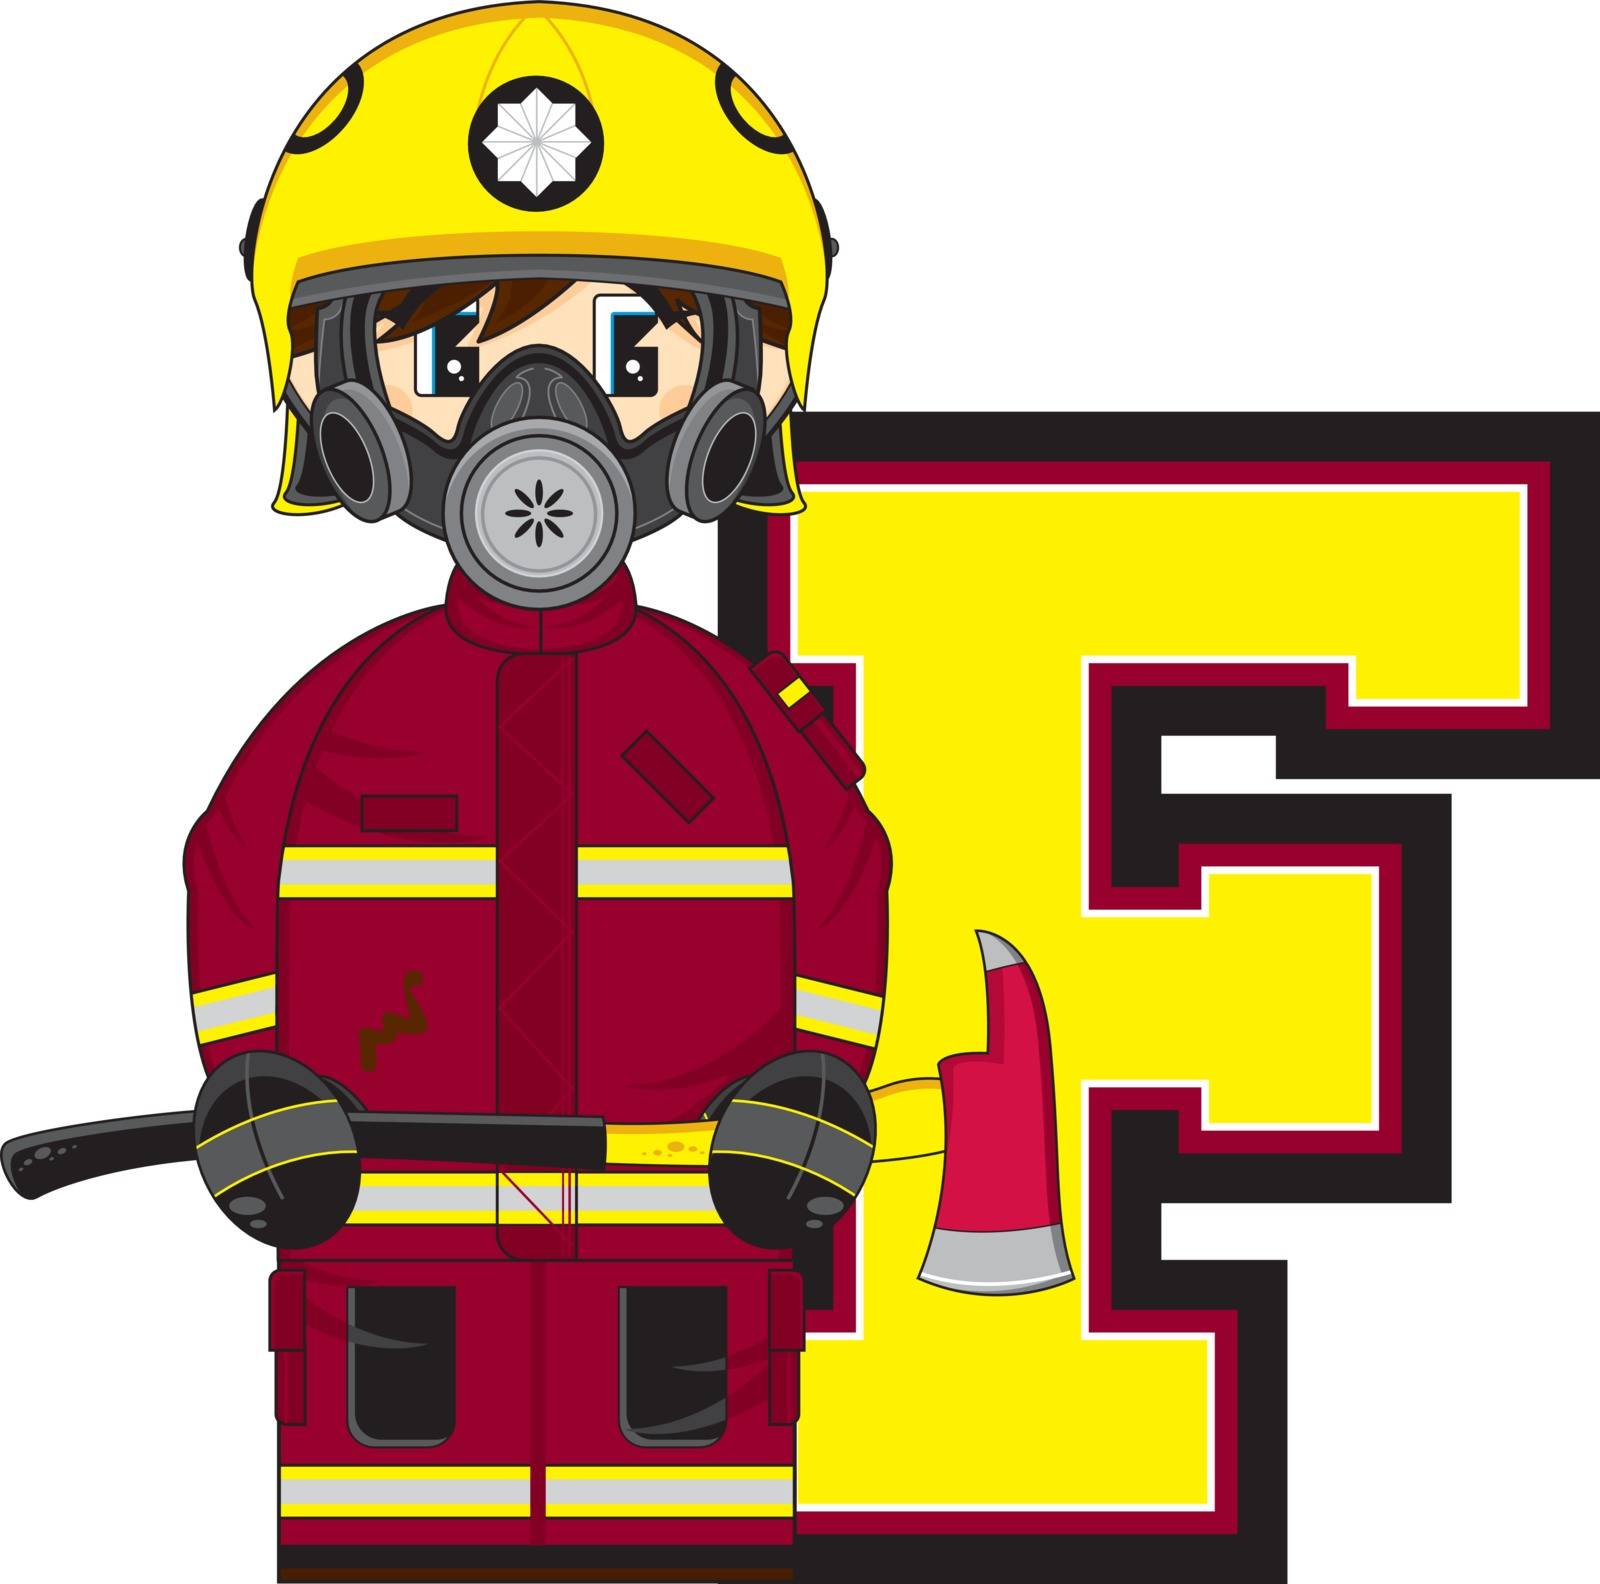 F is for Fireman by markmurphycreative